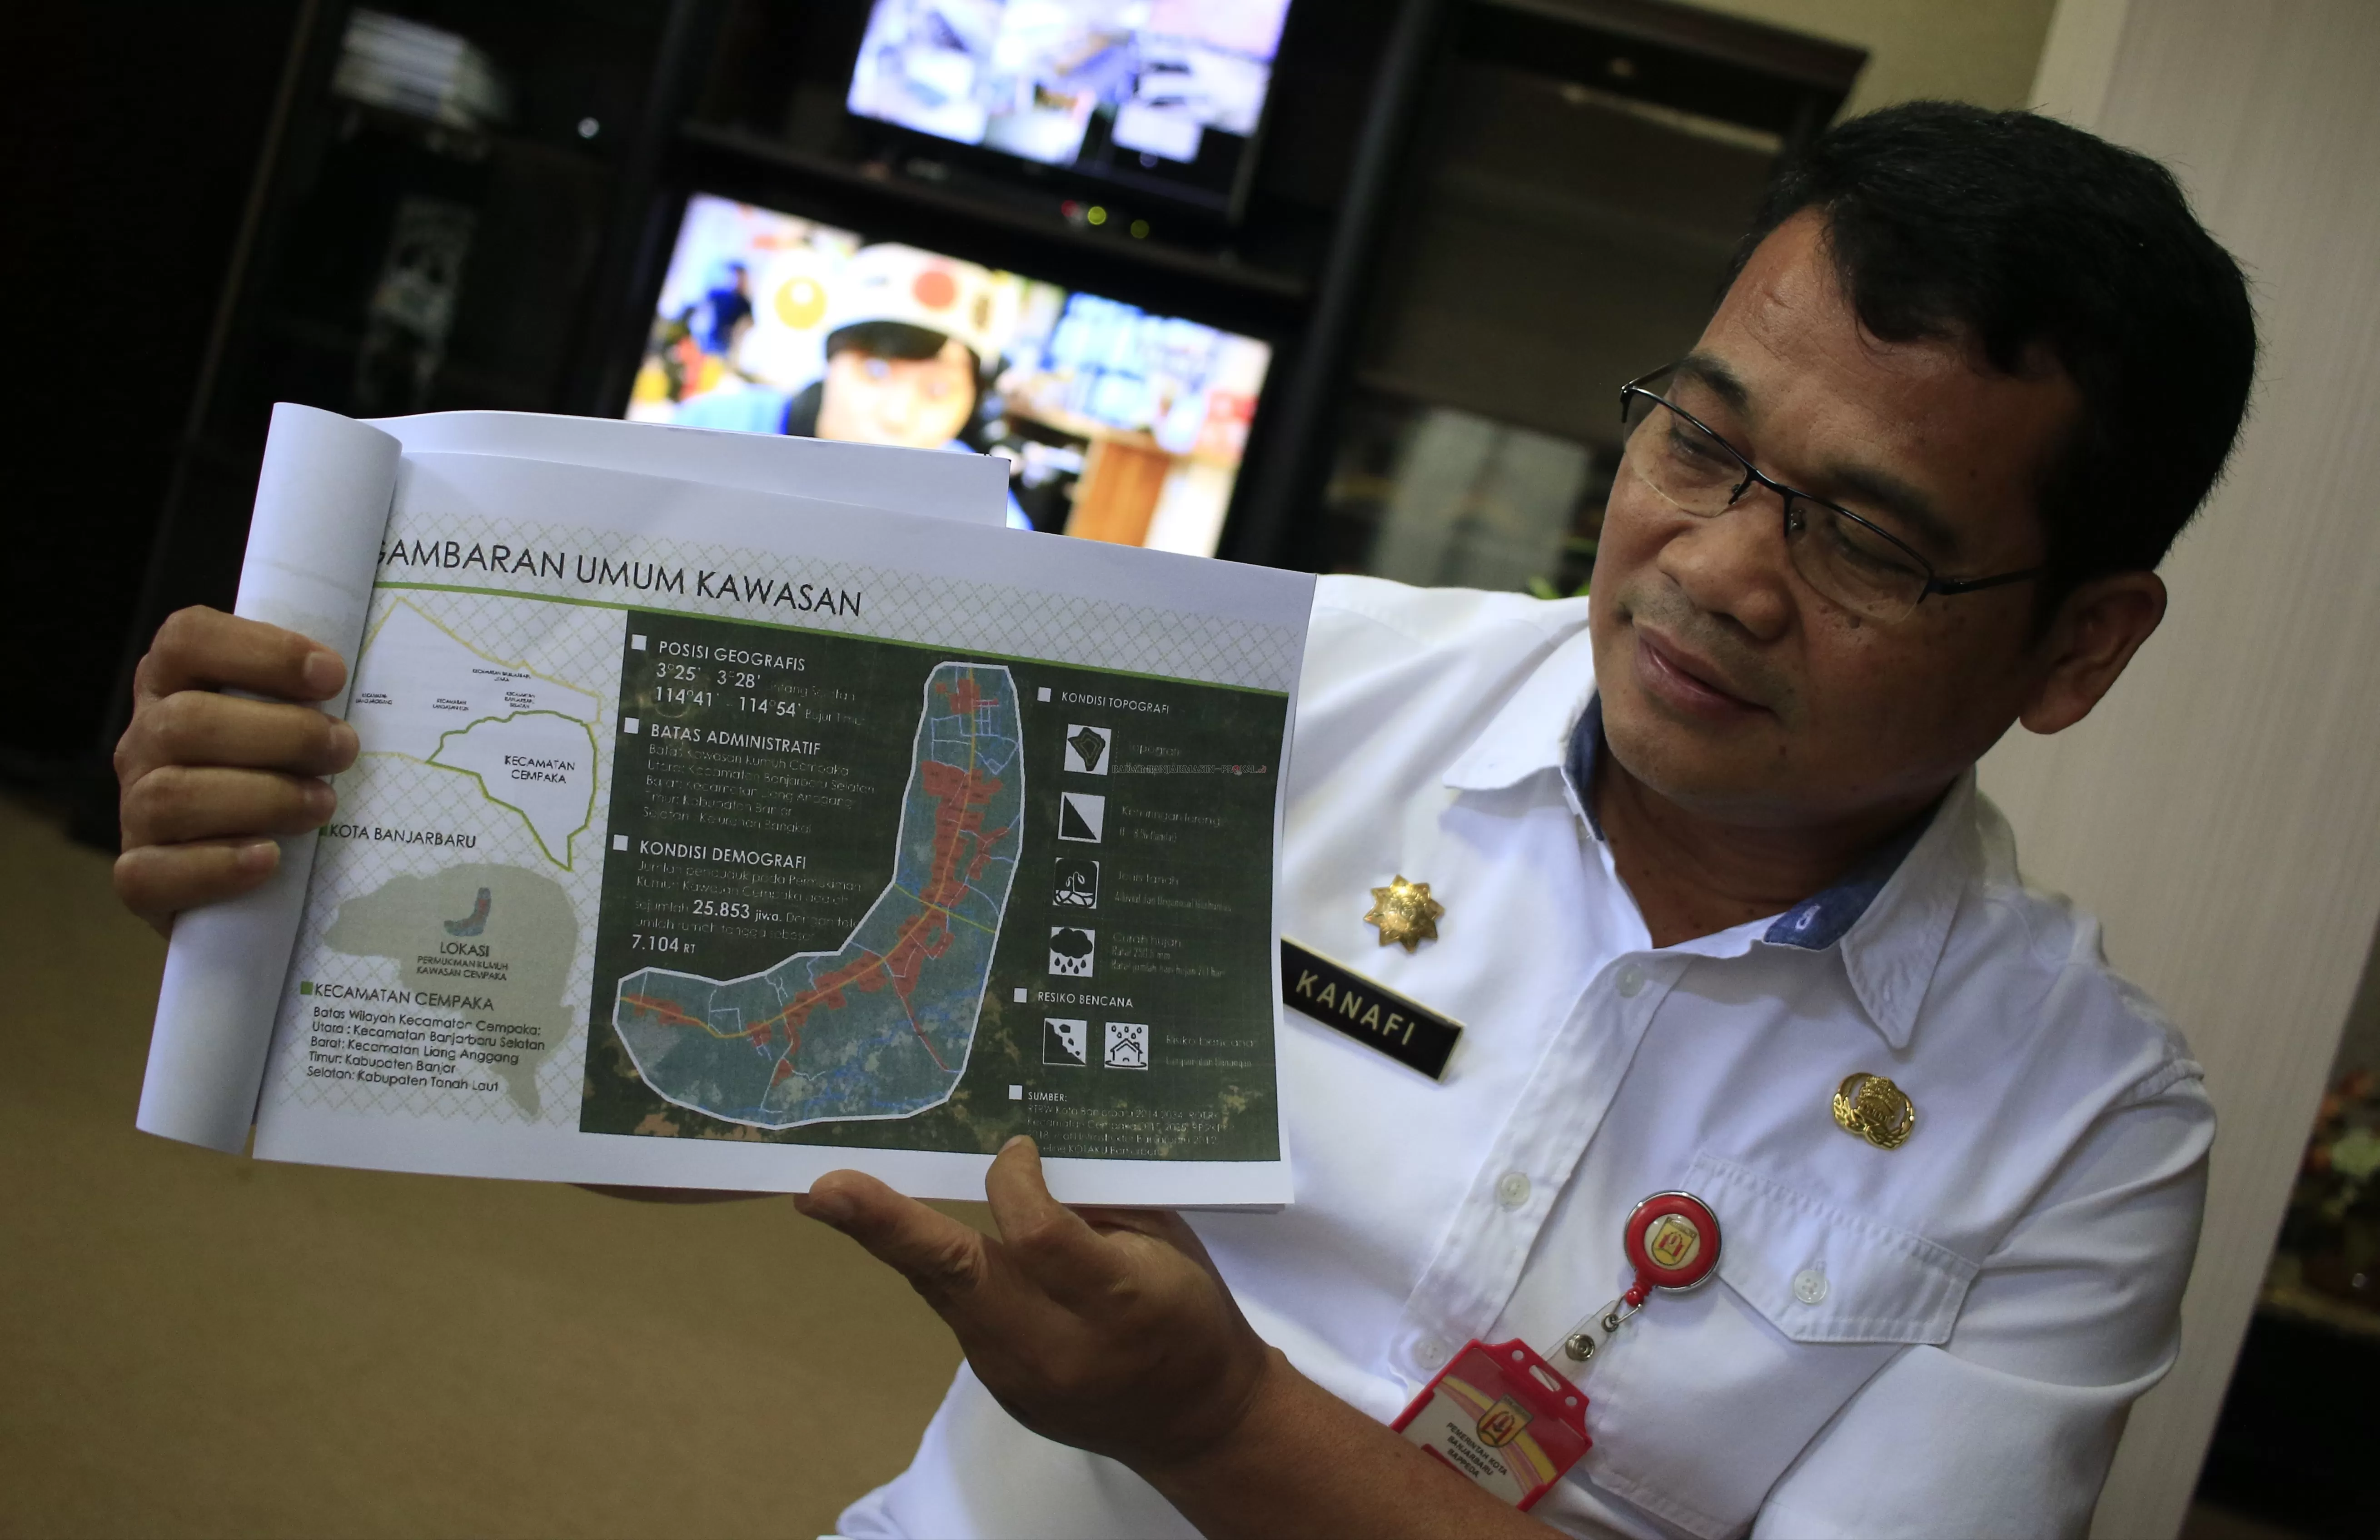 KONSEP KAWASAN: Kepala Bappeda Kota Banjarbaru, Kanafi memerlihatkan konsep kawasan di Cempaka untuk penanganan kawasan kumuh sekaligus pengendalian banjir. | Foto: Muhammad Rifani/Radar Banjarmasin